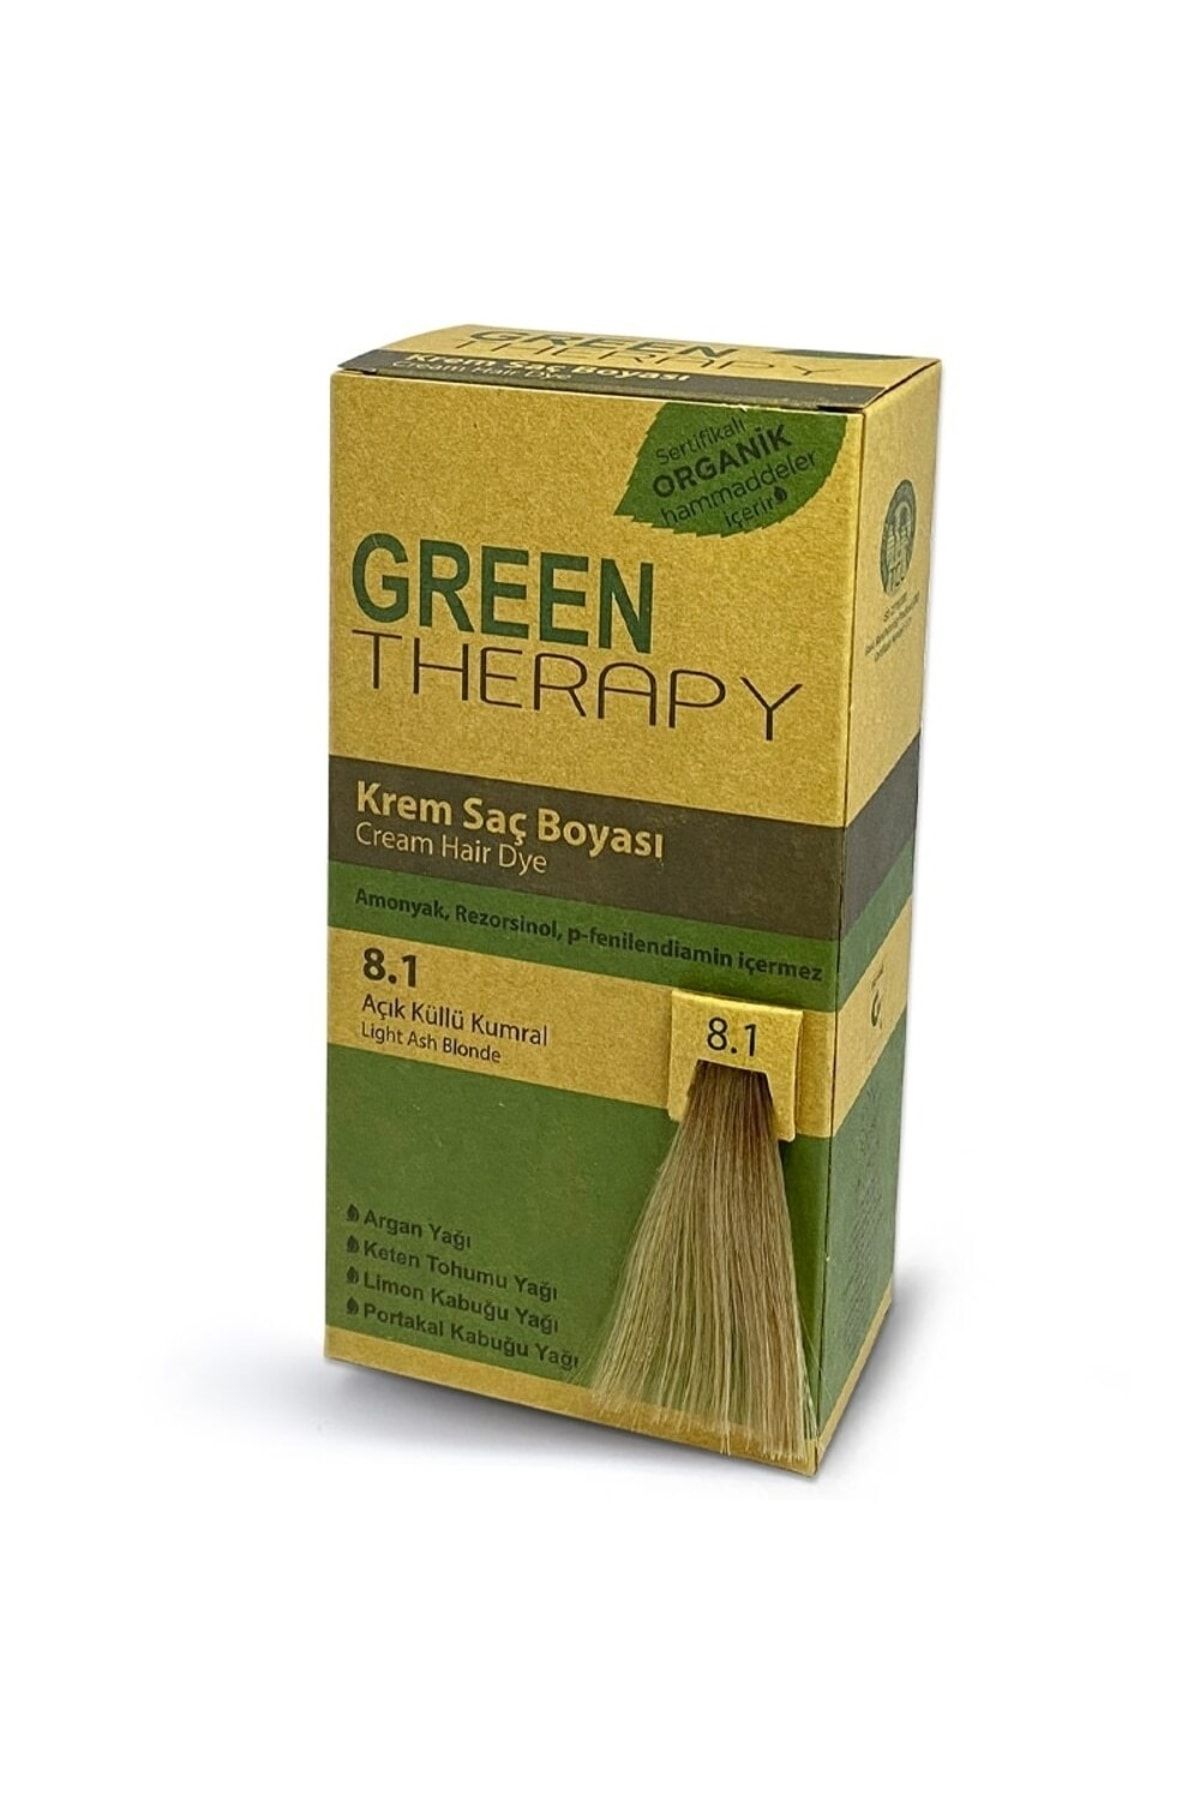 Green Therapy Krem Saç Boyası 5,4 Açık Kestane